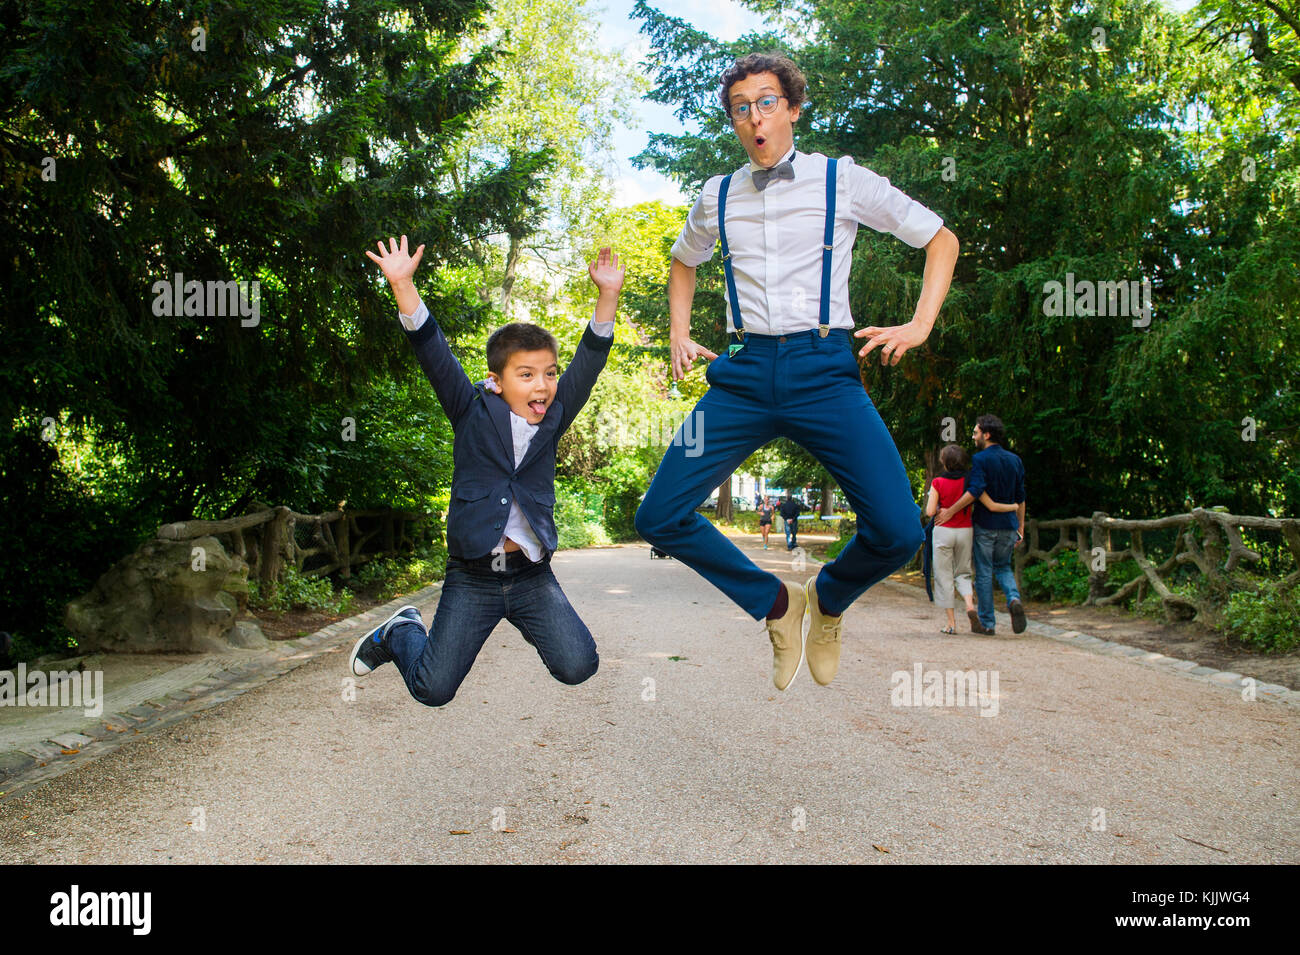 Brautpaar springen mit einem Jungen. Frankreich. Stockfoto